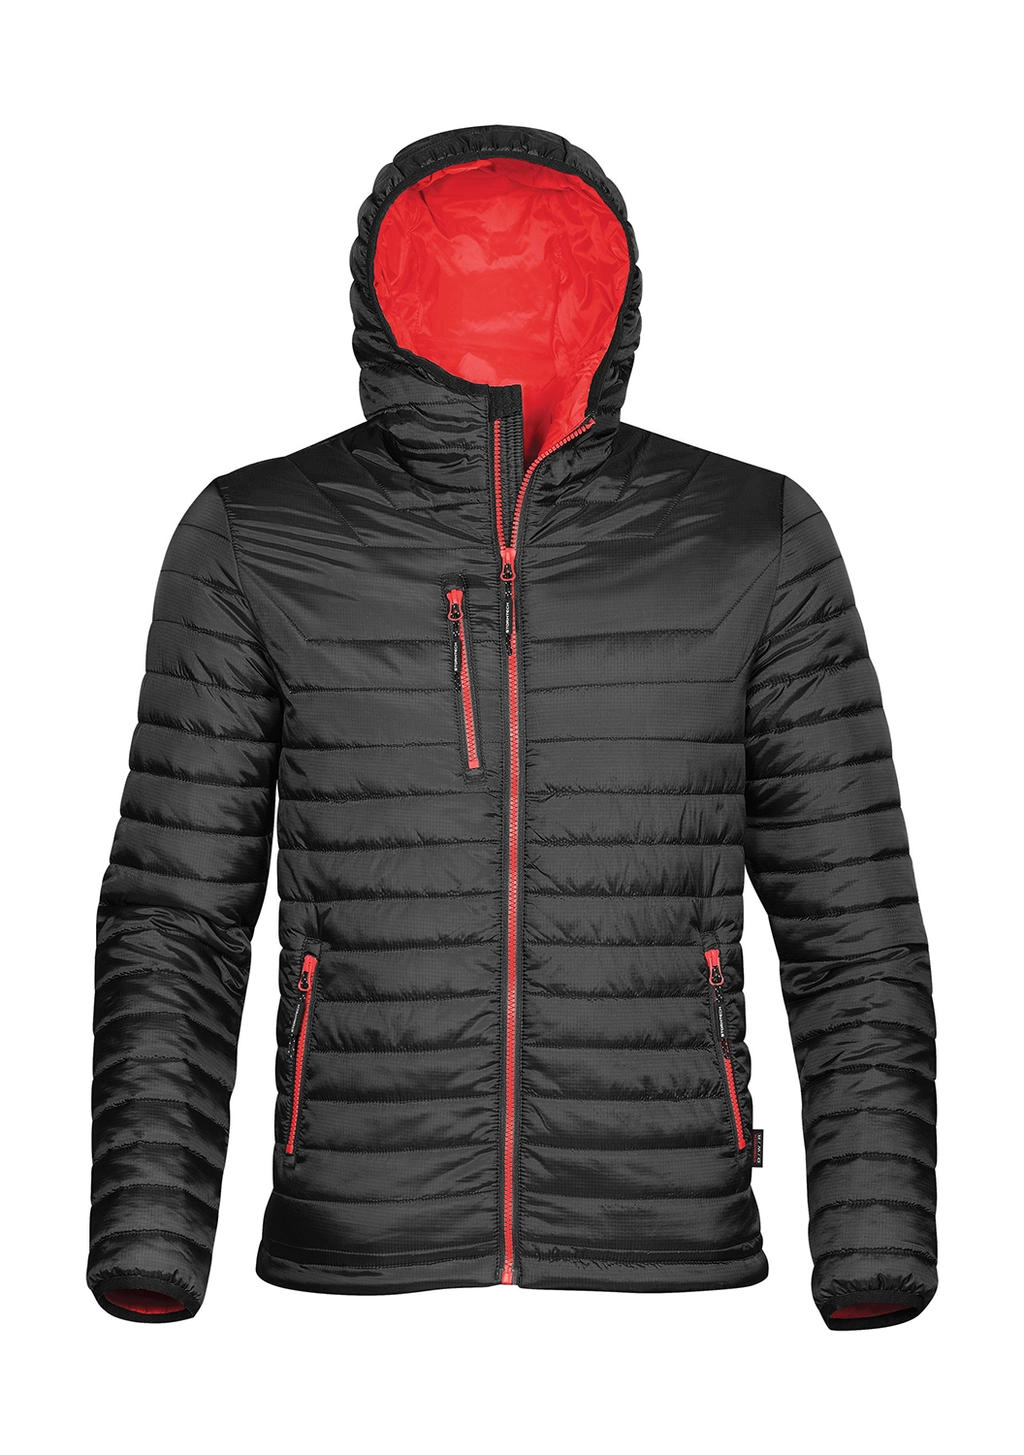 Gravity Thermal Jacket zum Besticken und Bedrucken in der Farbe Black/True Red mit Ihren Logo, Schriftzug oder Motiv.